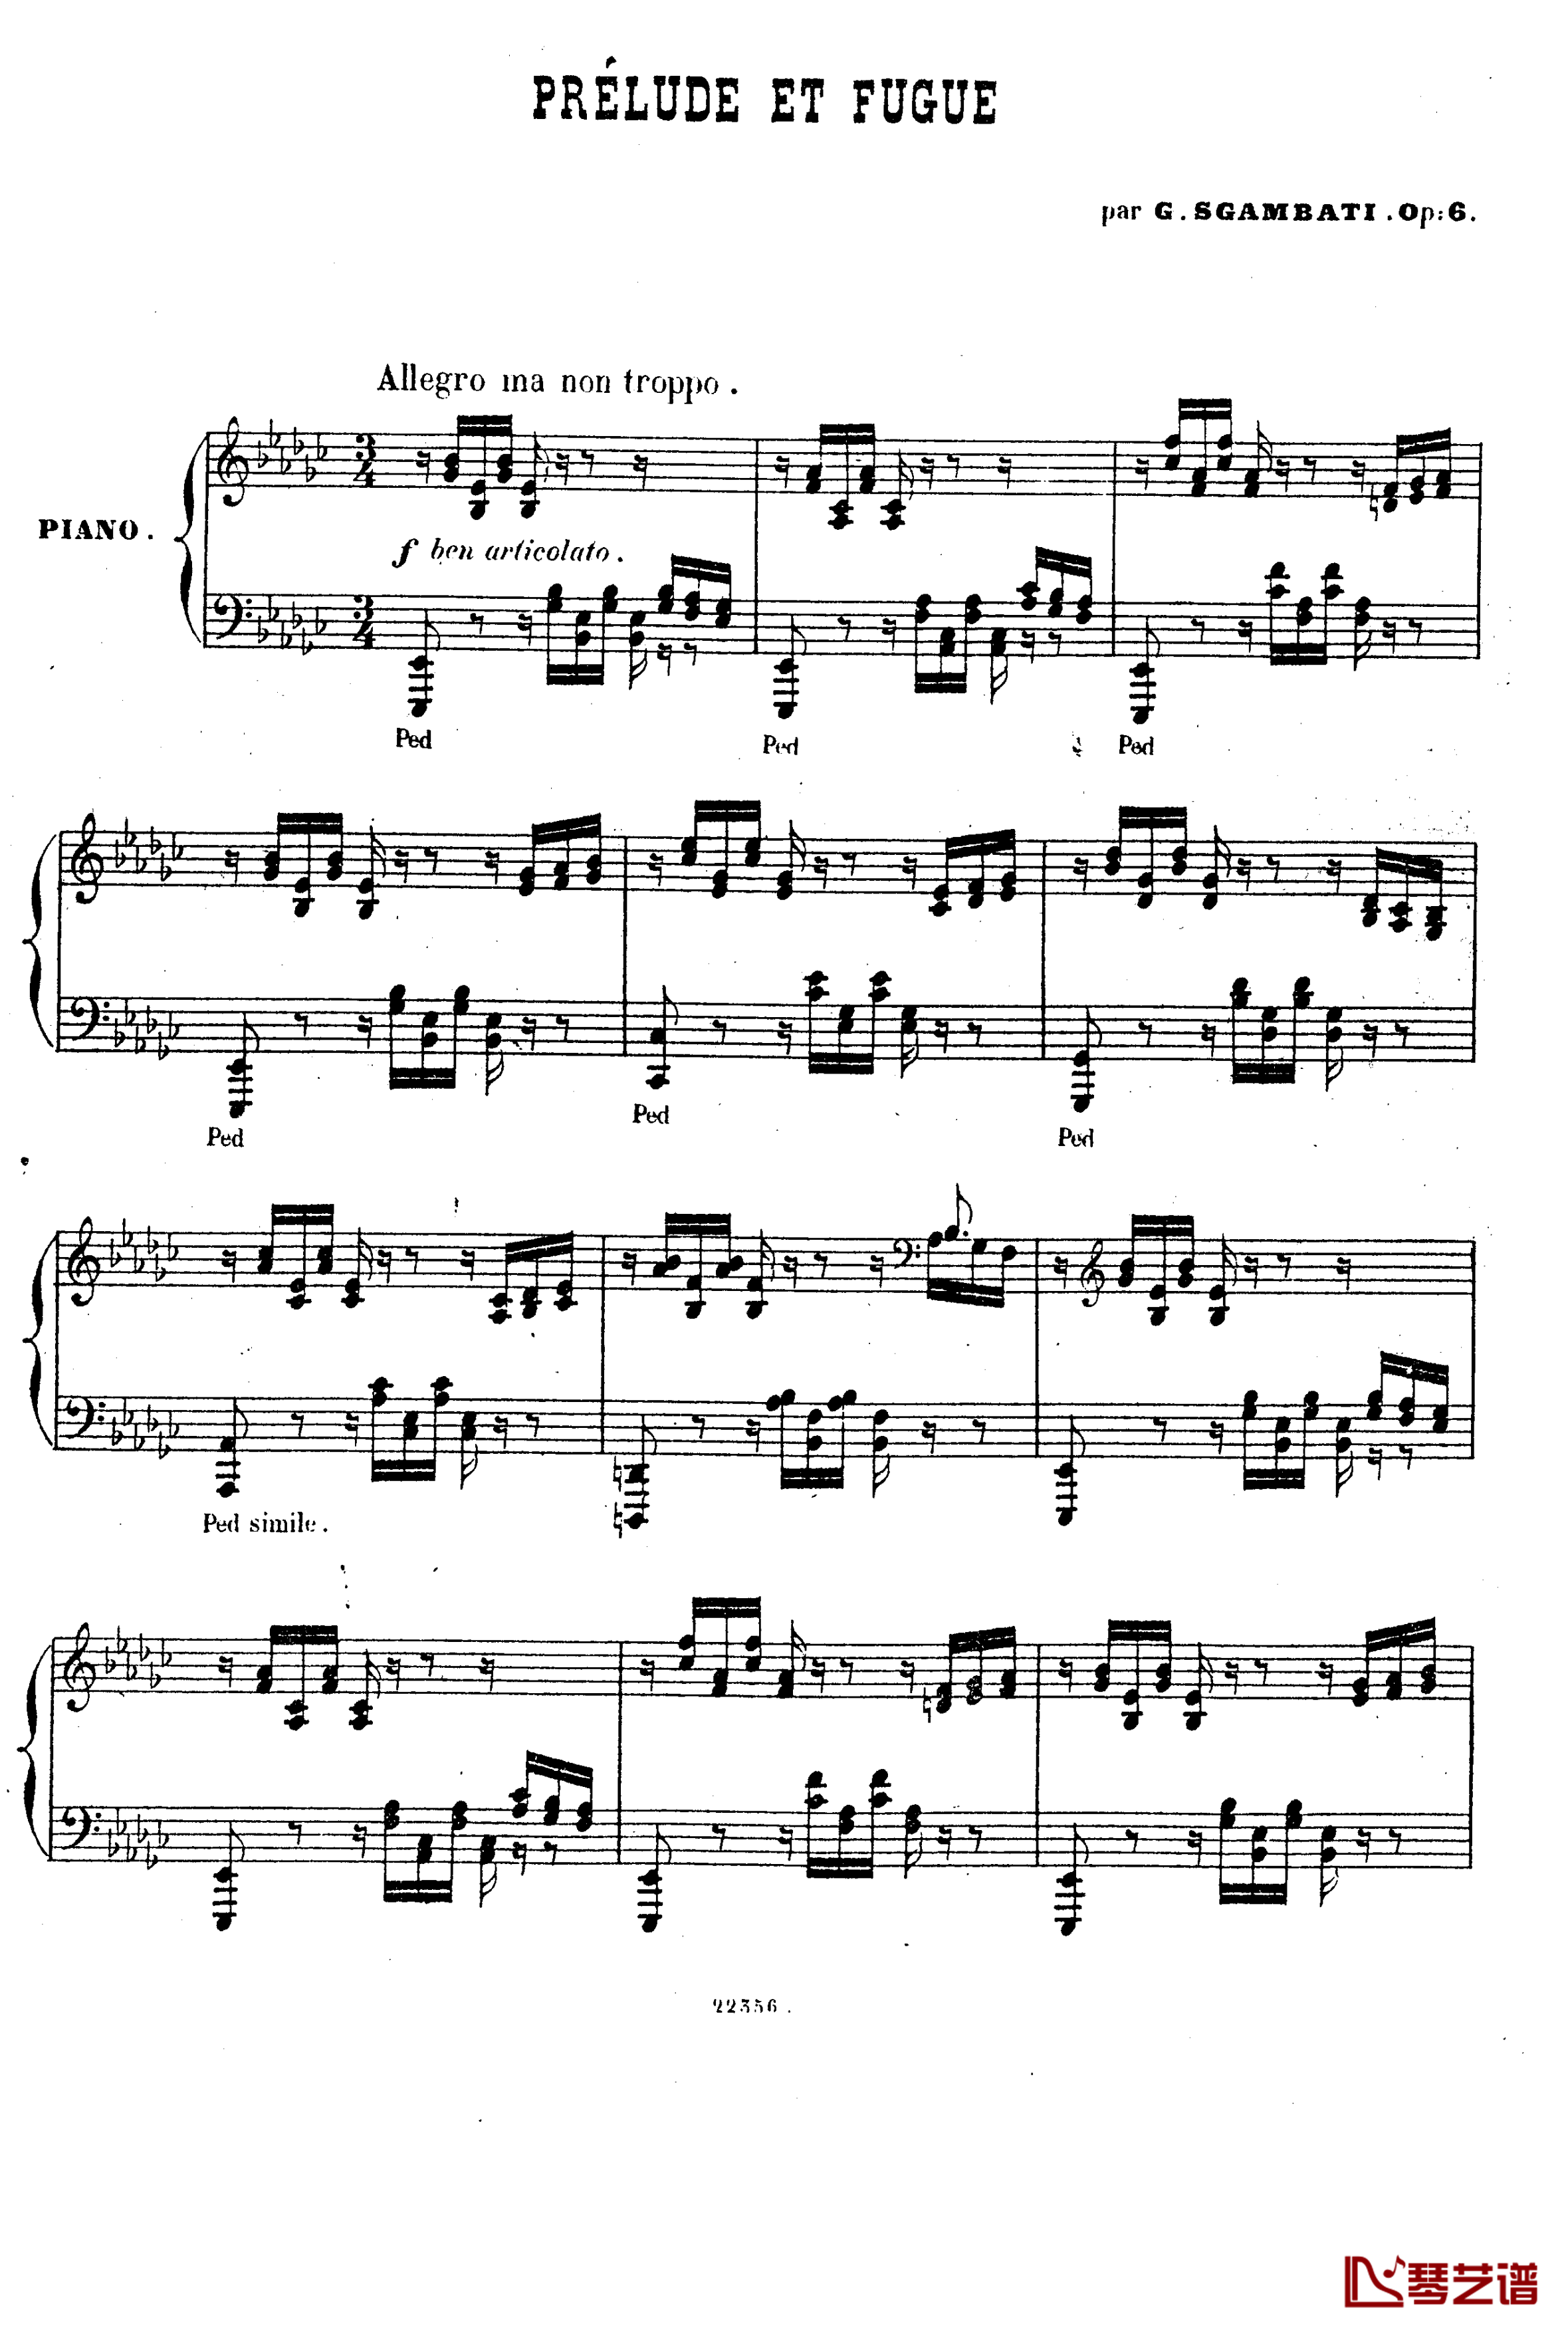  前奏曲与赋格 Op.6钢琴谱-斯甘巴蒂1